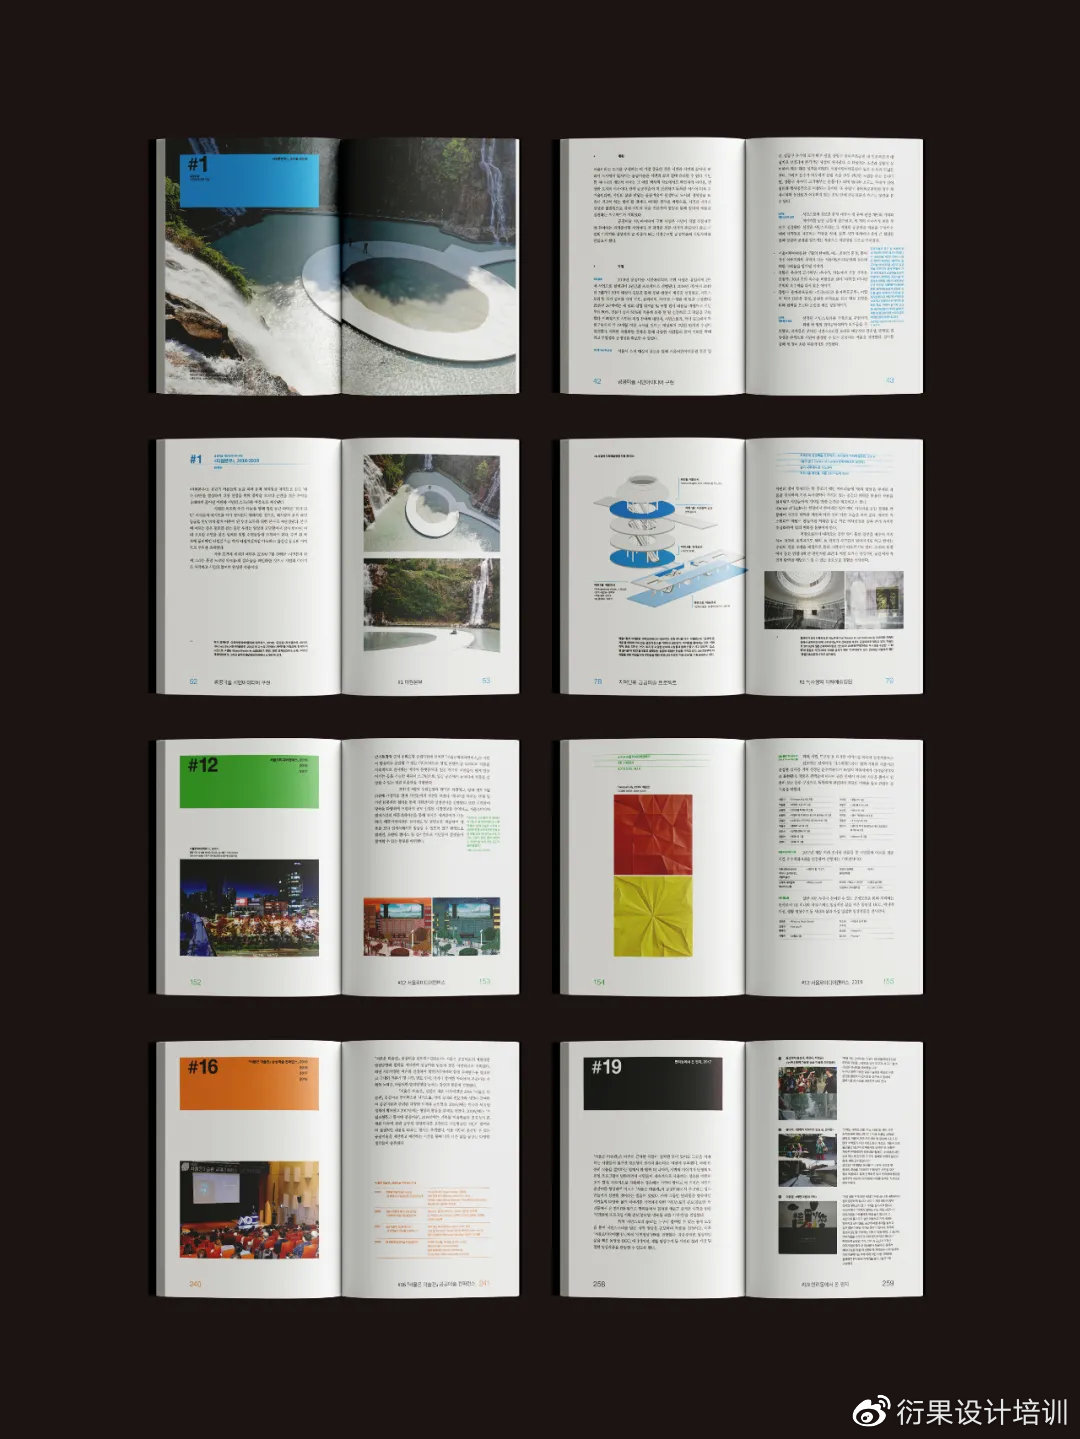 【平面设计】好看的平面设计画册哪里找